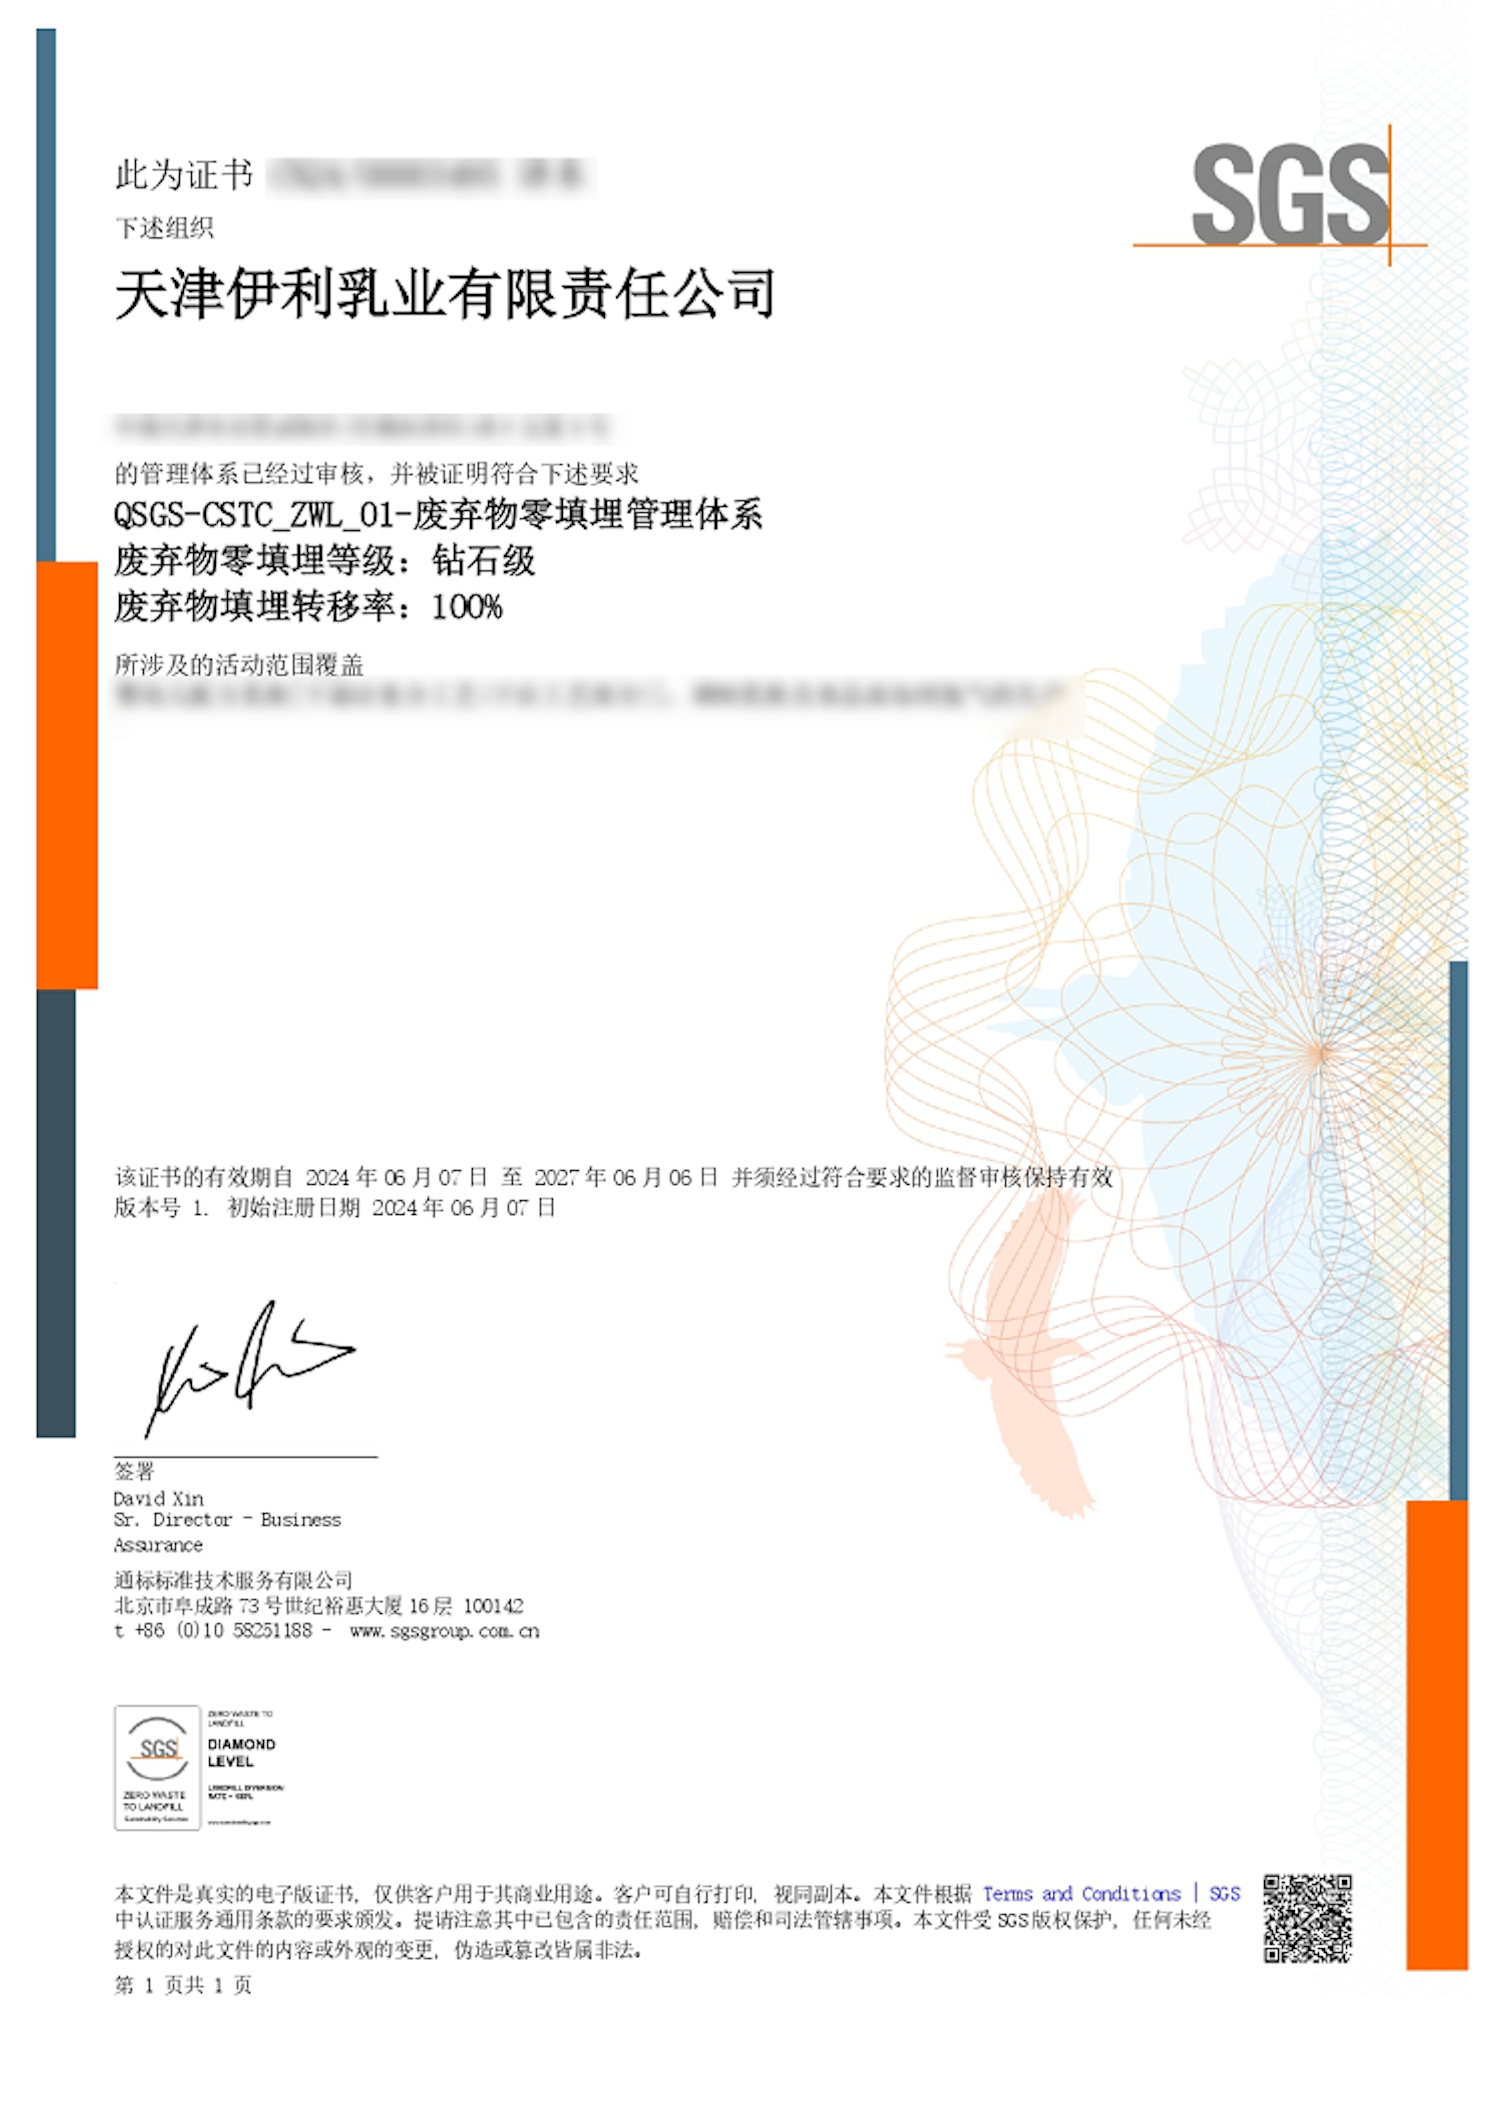 伊利获SGS颁发的“废弃物零填埋”管理体系认证证书